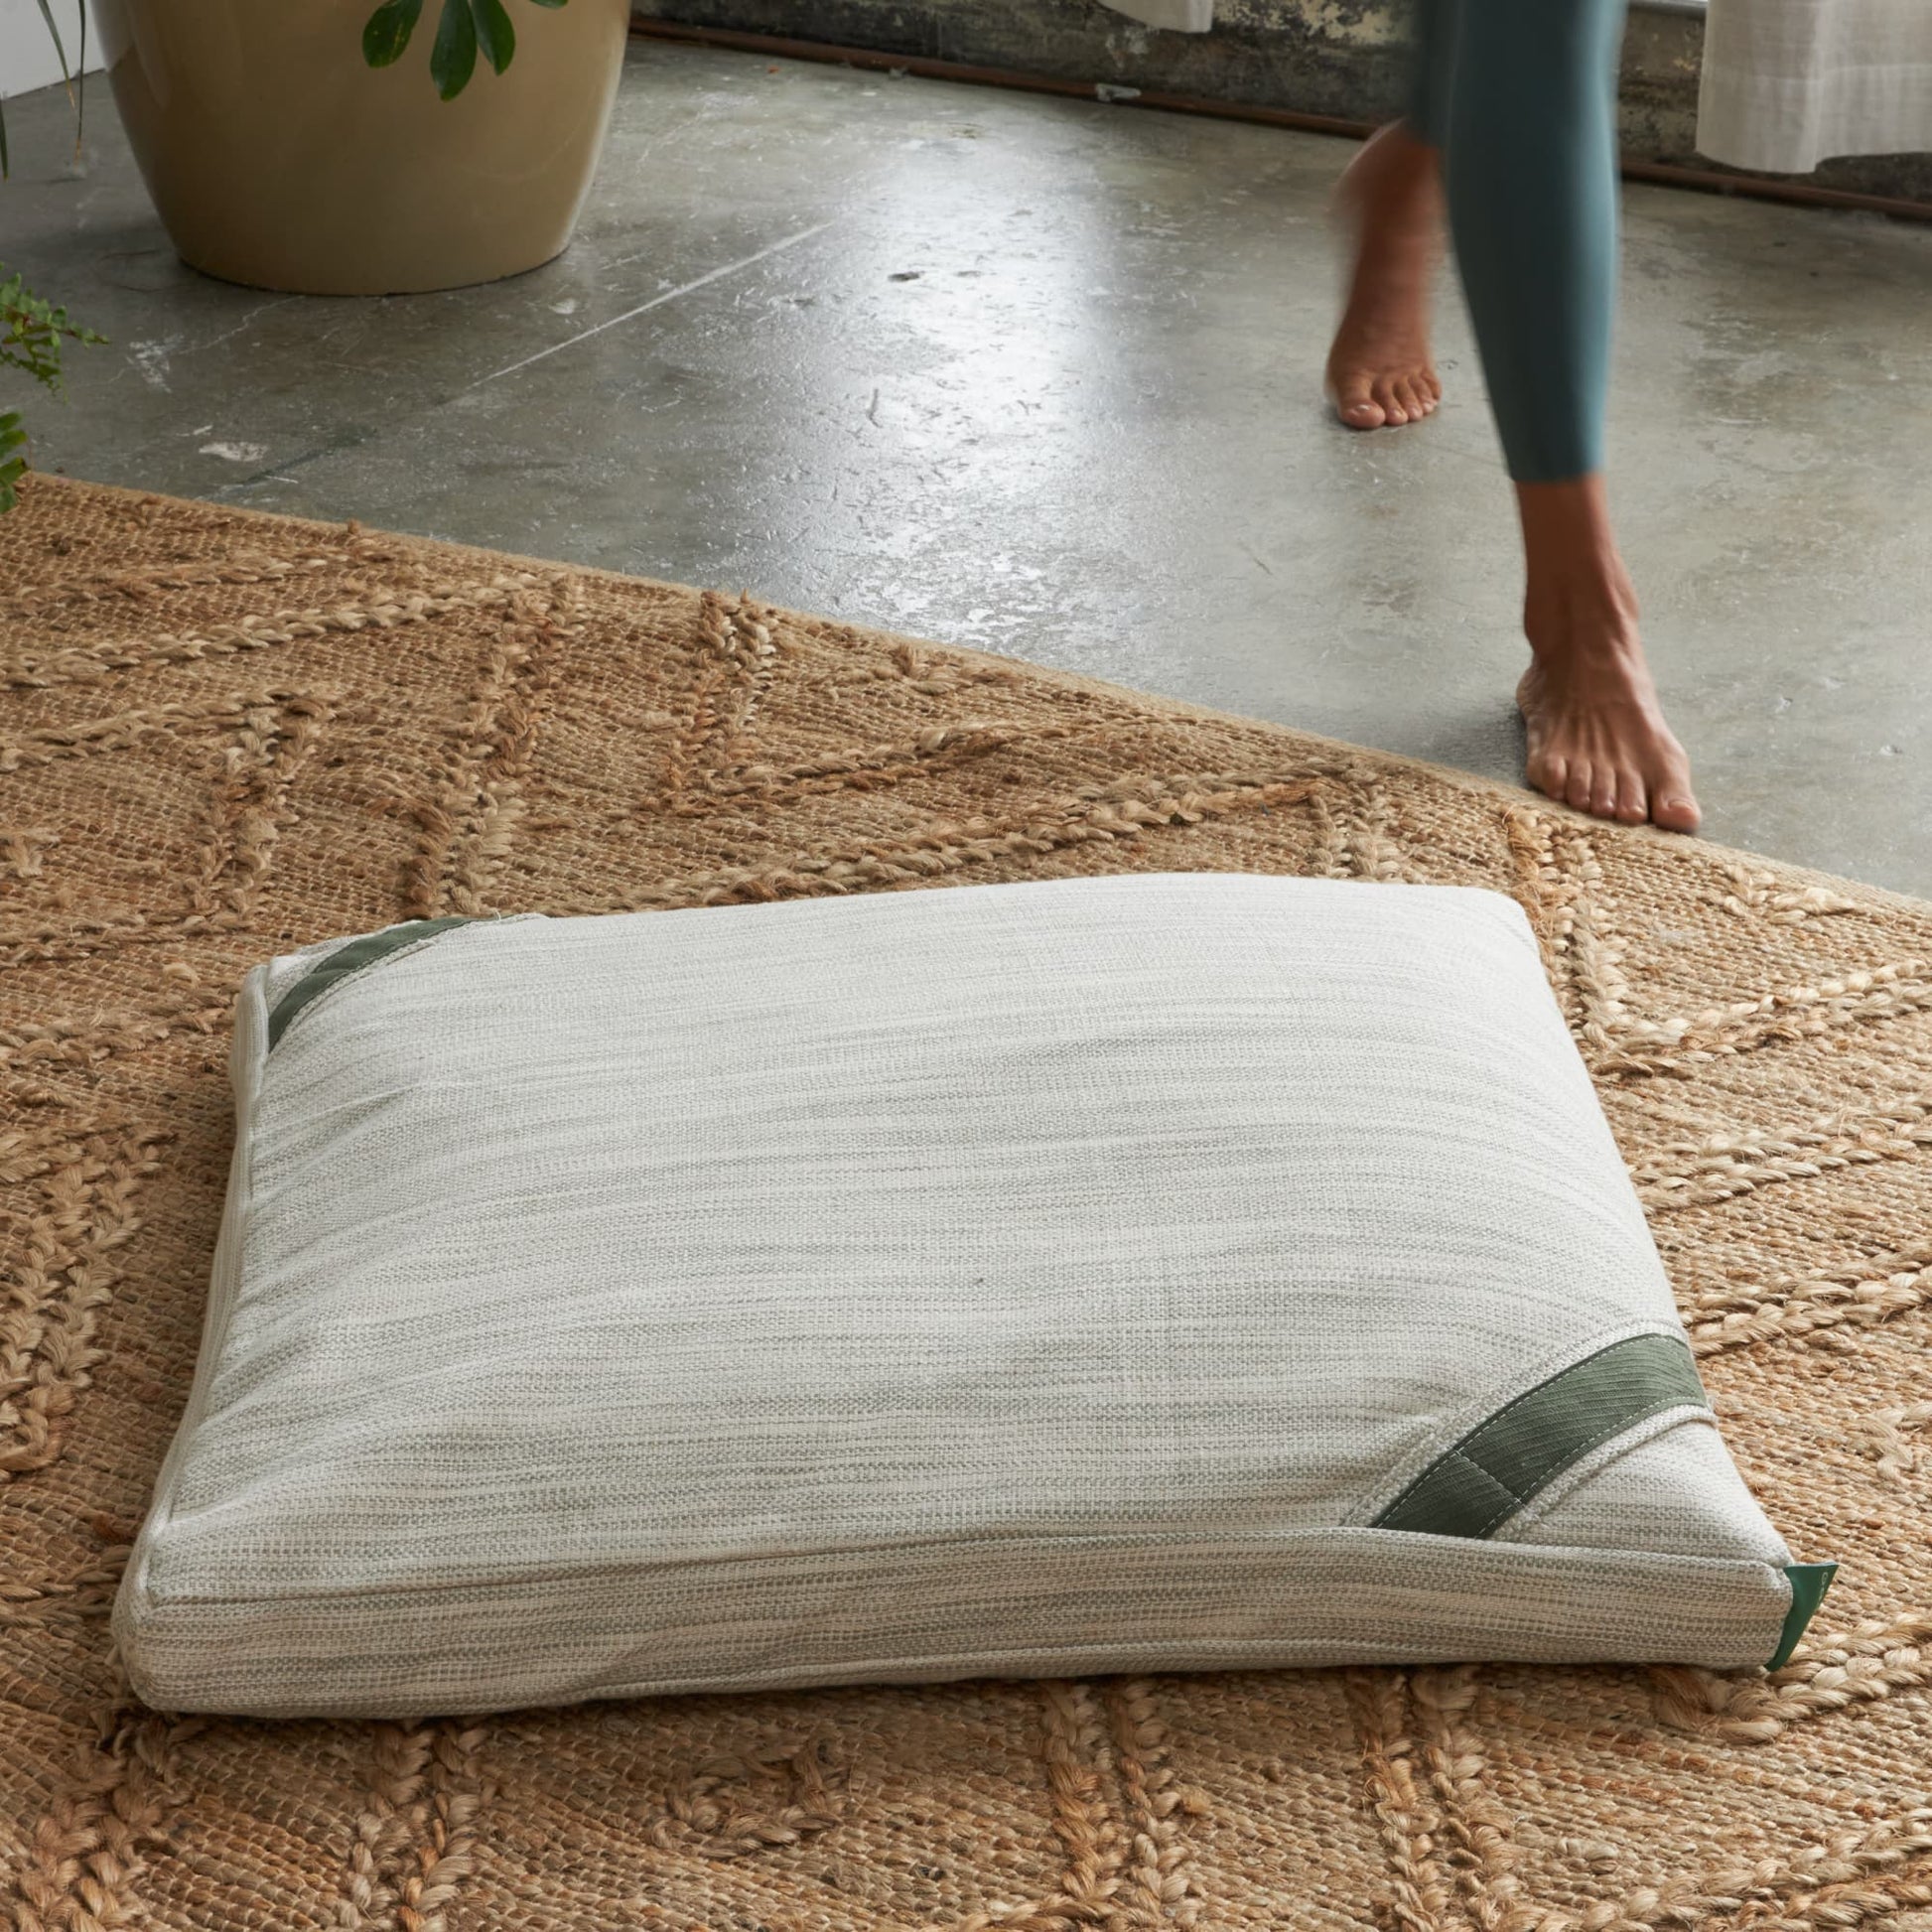 Avocado Organic Square Yoga Meditation Pillow MADE SAFE